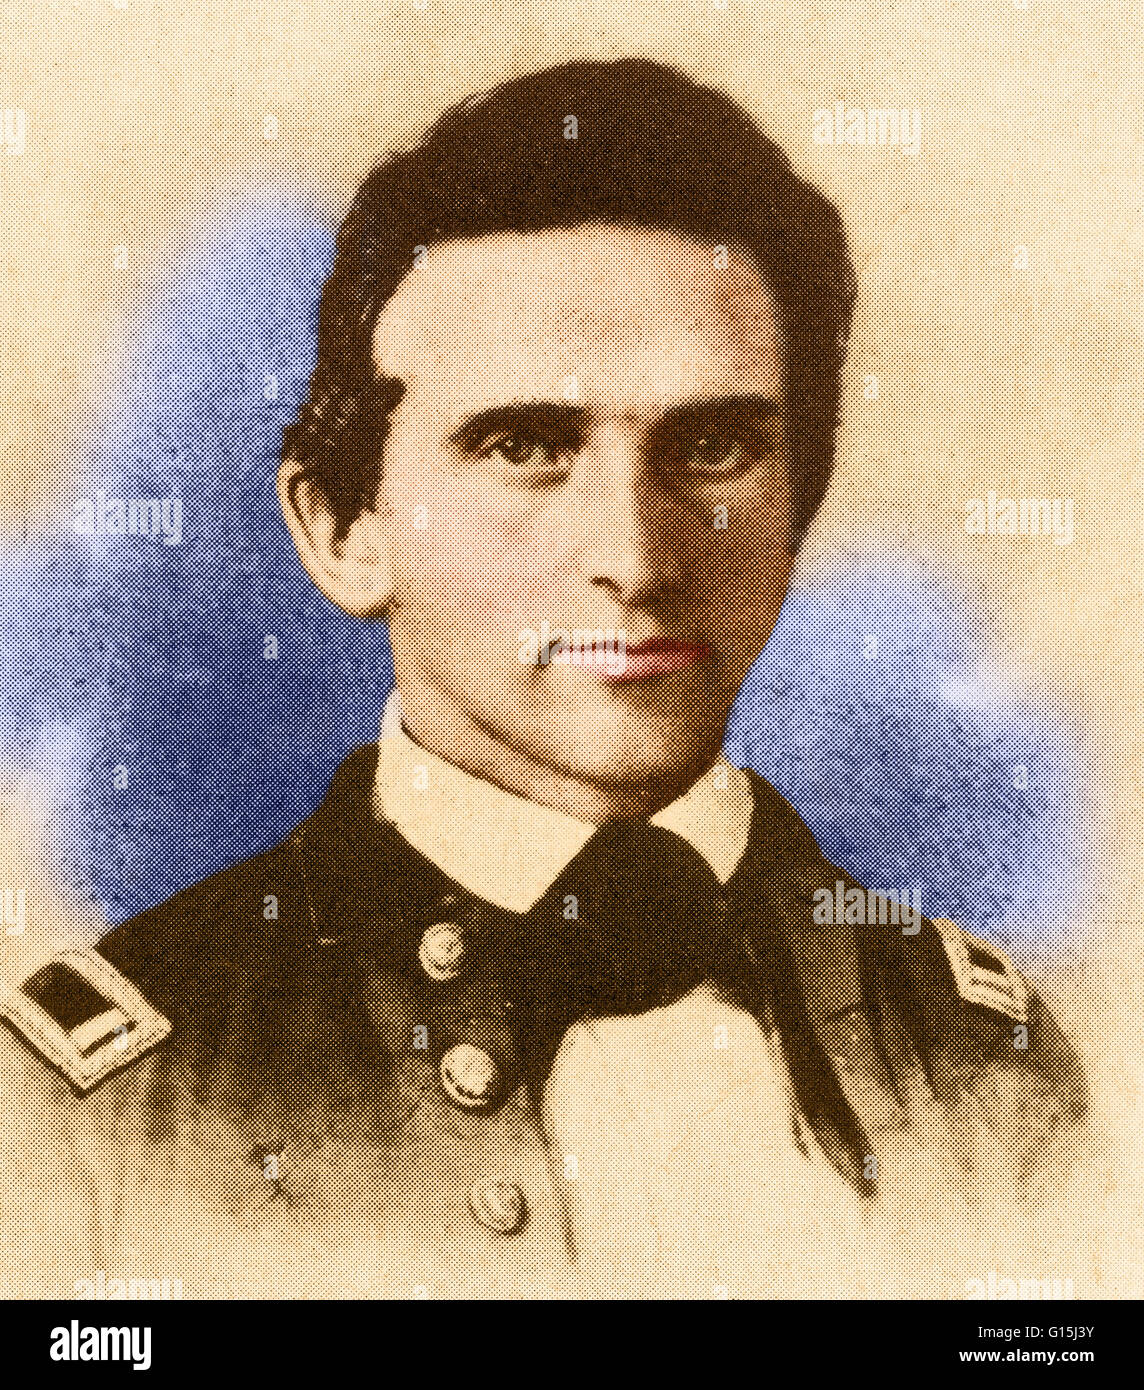 Farbe verbesserte Porträt von Thomas Jonathan "Stonewall" Jackson (21. Januar 1824 - 10. Mai 1863), einem konföderierten General während des amerikanischen Bürgerkriegs. Jackson gilt als einer der begabtesten taktischen Kommandanten in der amerikanischen Geschichte. Sein Tal C Stockfoto